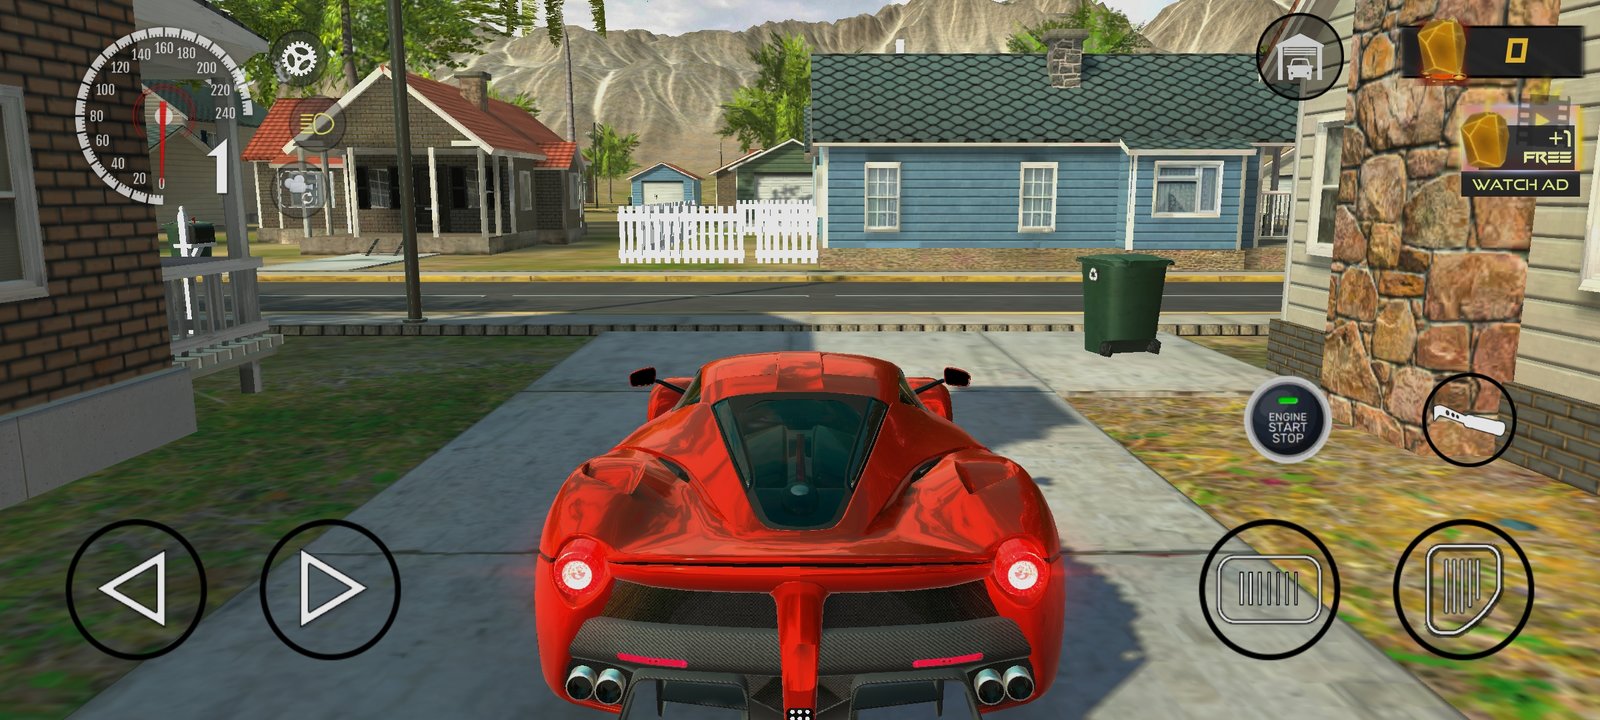 Extreme Car Driving Simulator APK v6.5.0 (MOD Unlimited Money) en